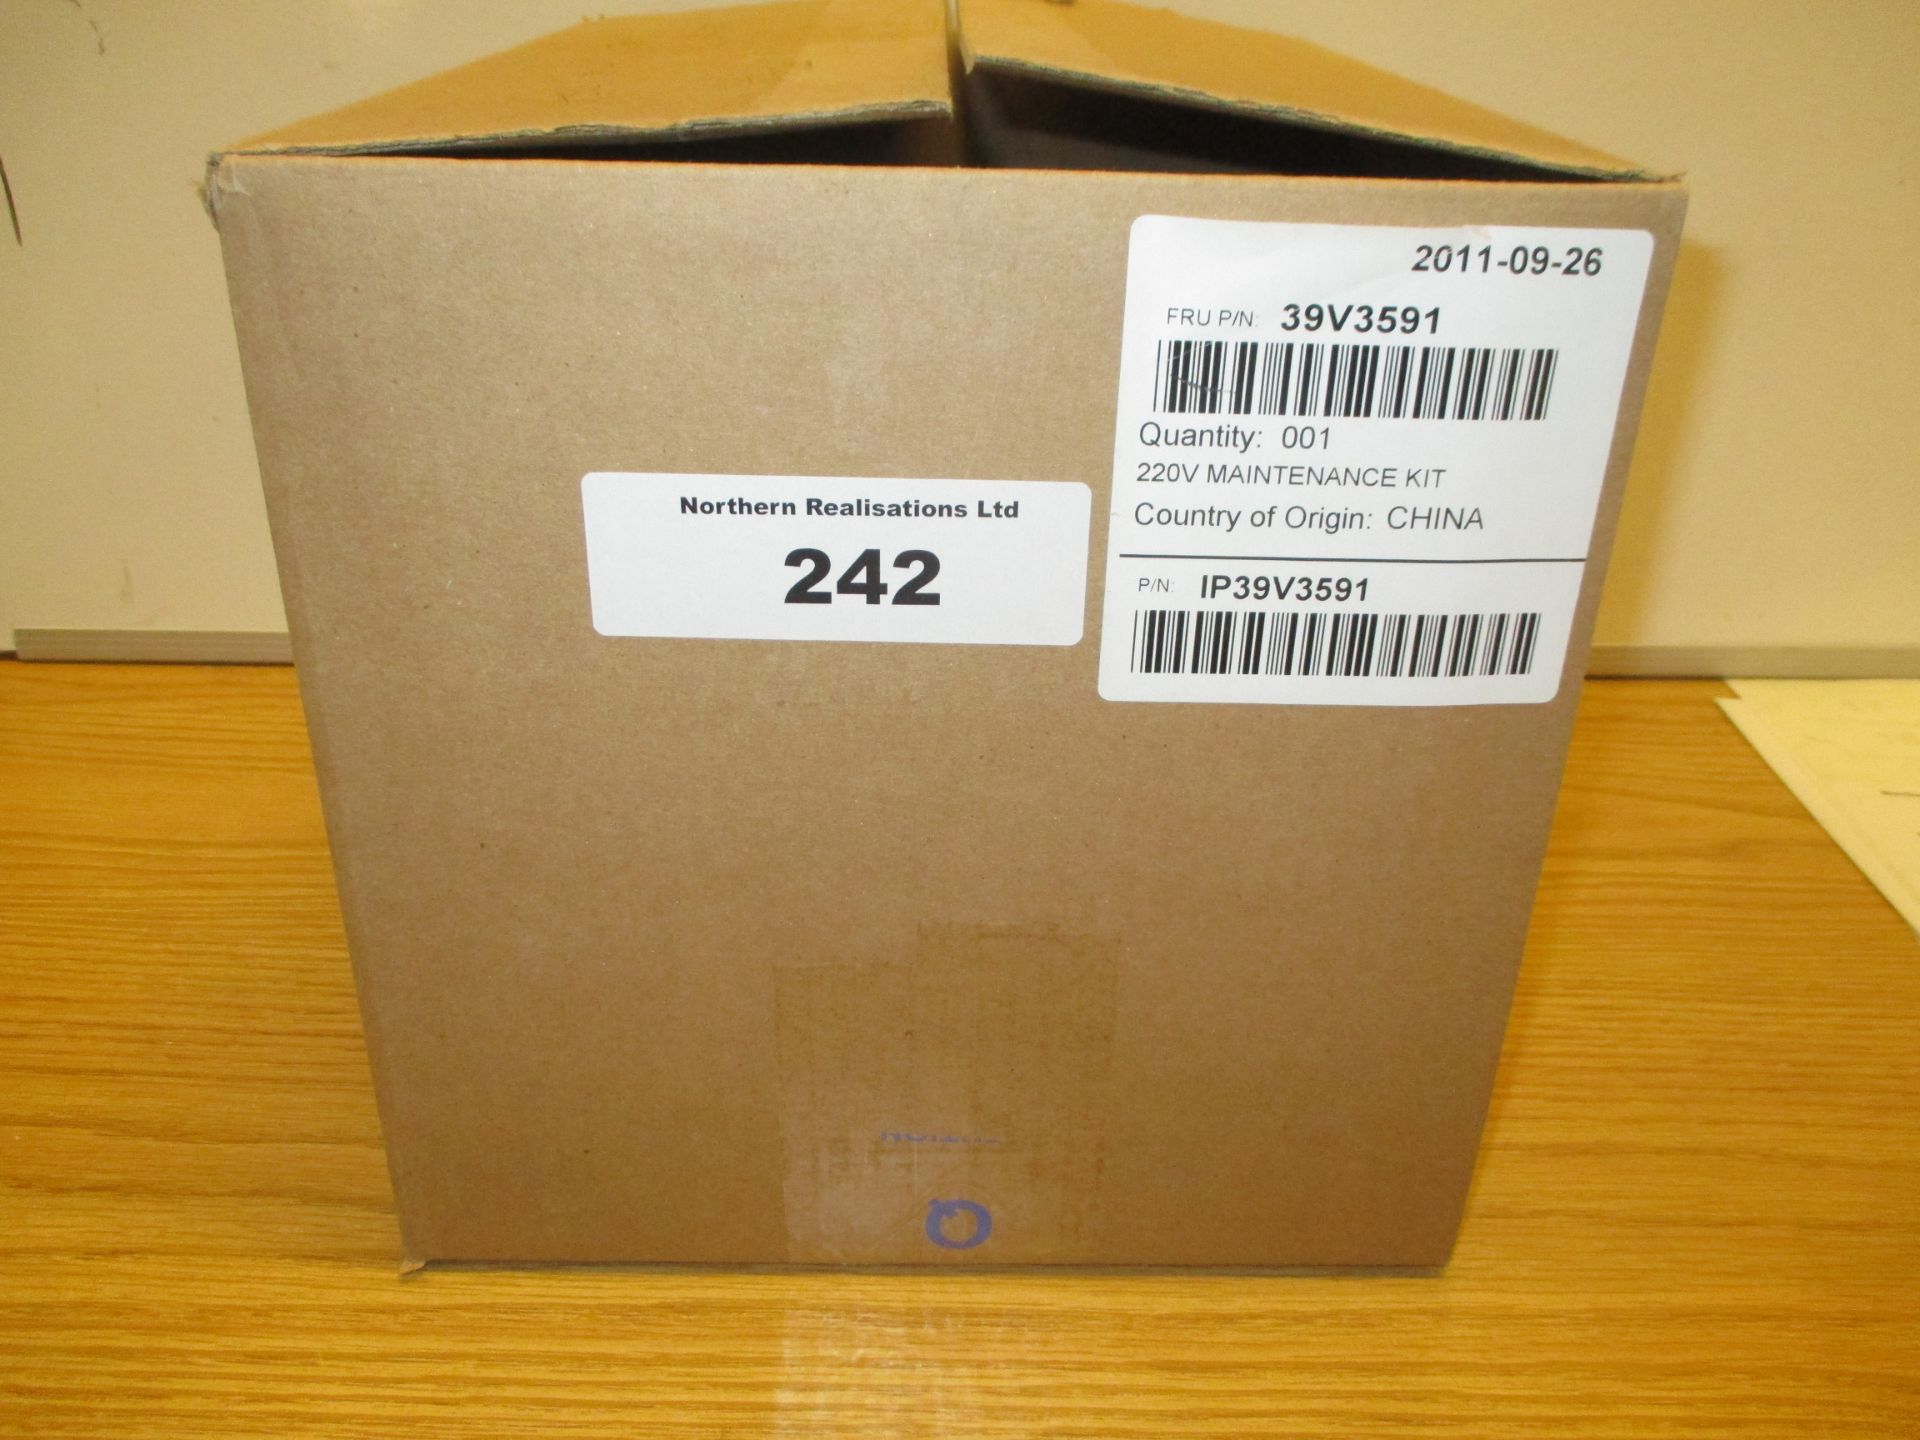 39V3591 Maintenance Kit for Infoprint 1832 / 1850 MFP. BOX OPEN